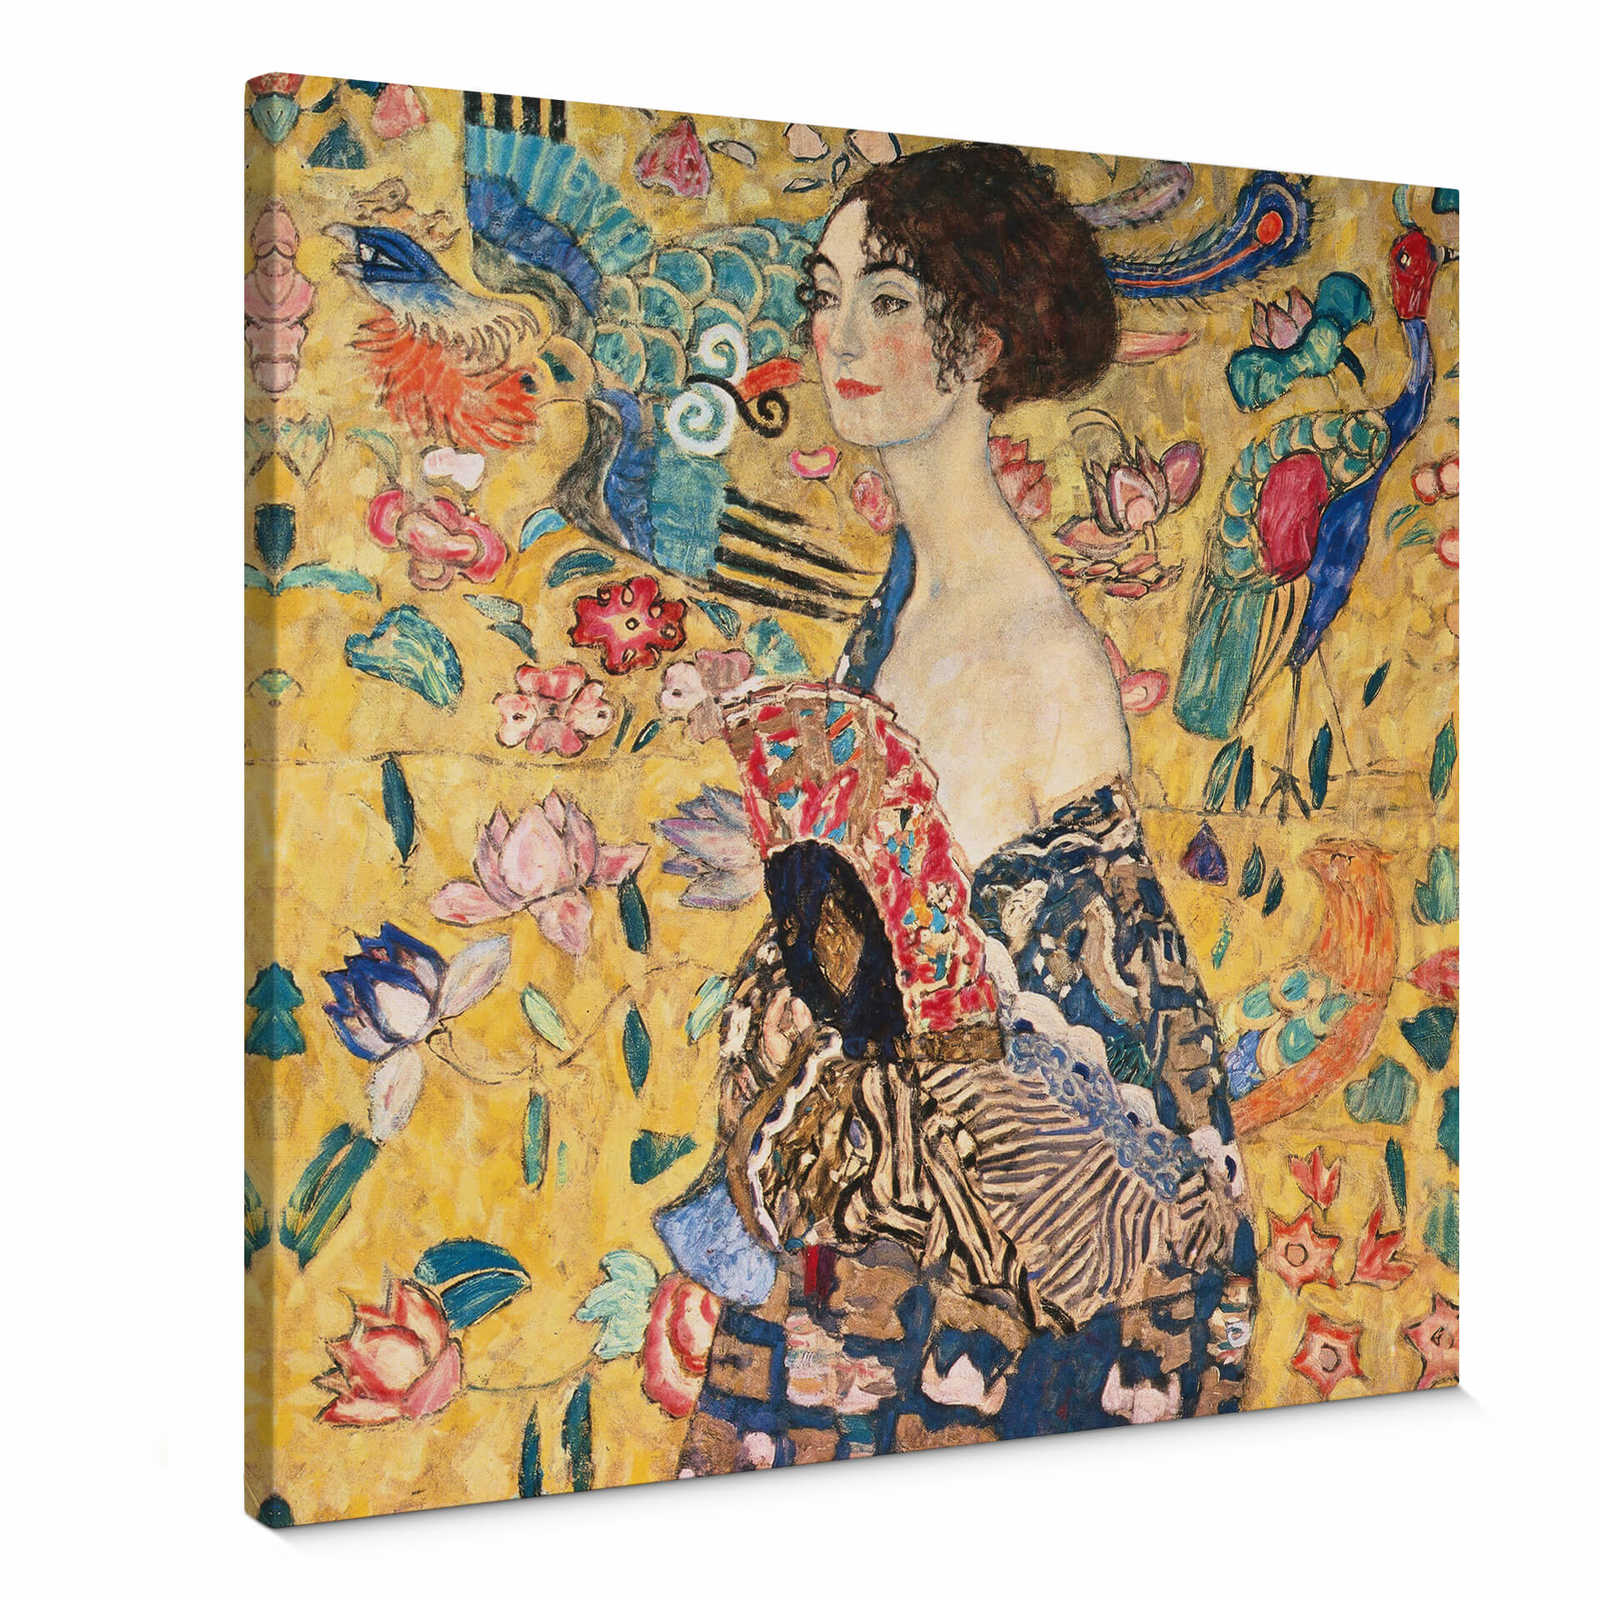         Quadratisches Leinwandbild "Dame mit Fächer" von Klimt – 0,50 m x 0,50 m
    